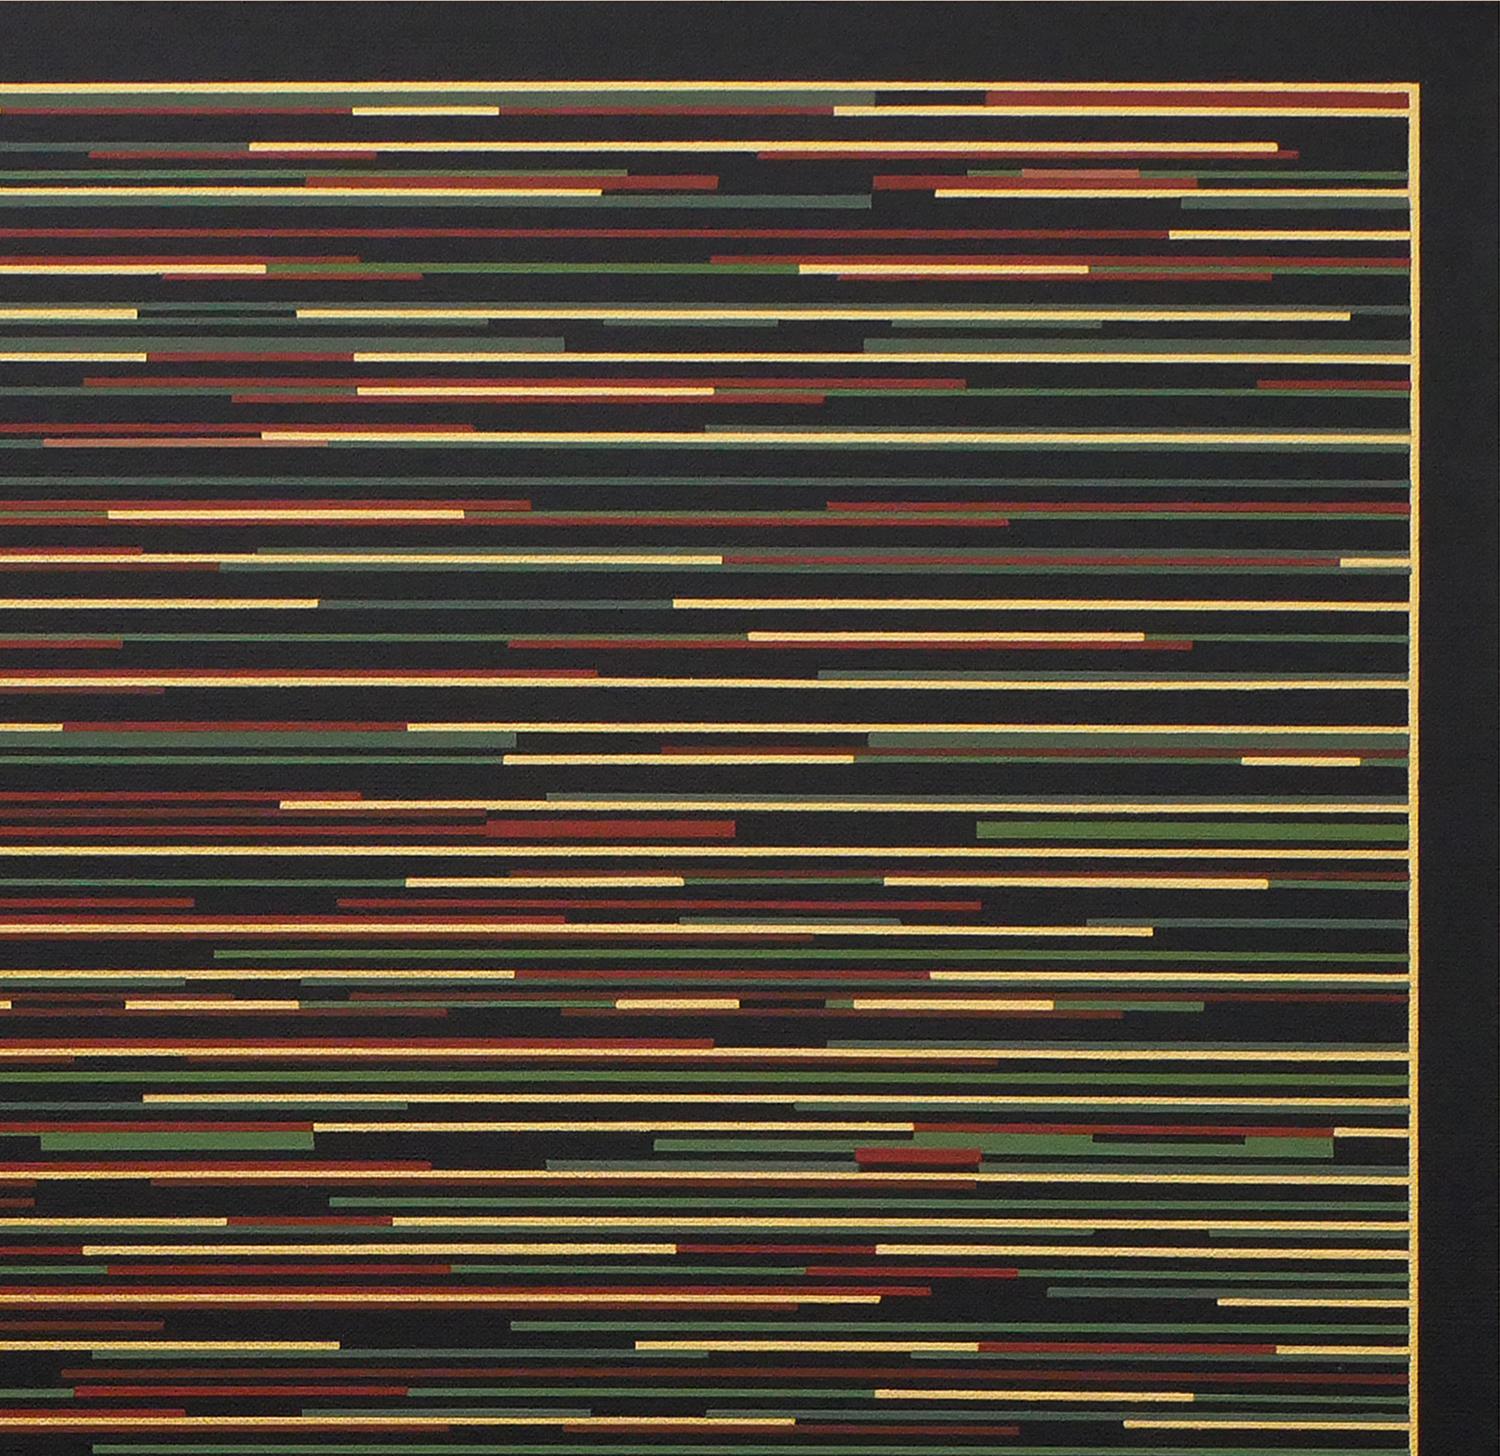 Zeitgenössische abstrakte geometrische Malerei des Künstlers Mark Byckowski. Das Werk ist in einer Reihe von Gemälden zu sehen. Das Werk zeigt horizontale Linien mit einer Vielzahl von lebhaften Farben wie Rot, Blau, Grün und Gelb auf einem